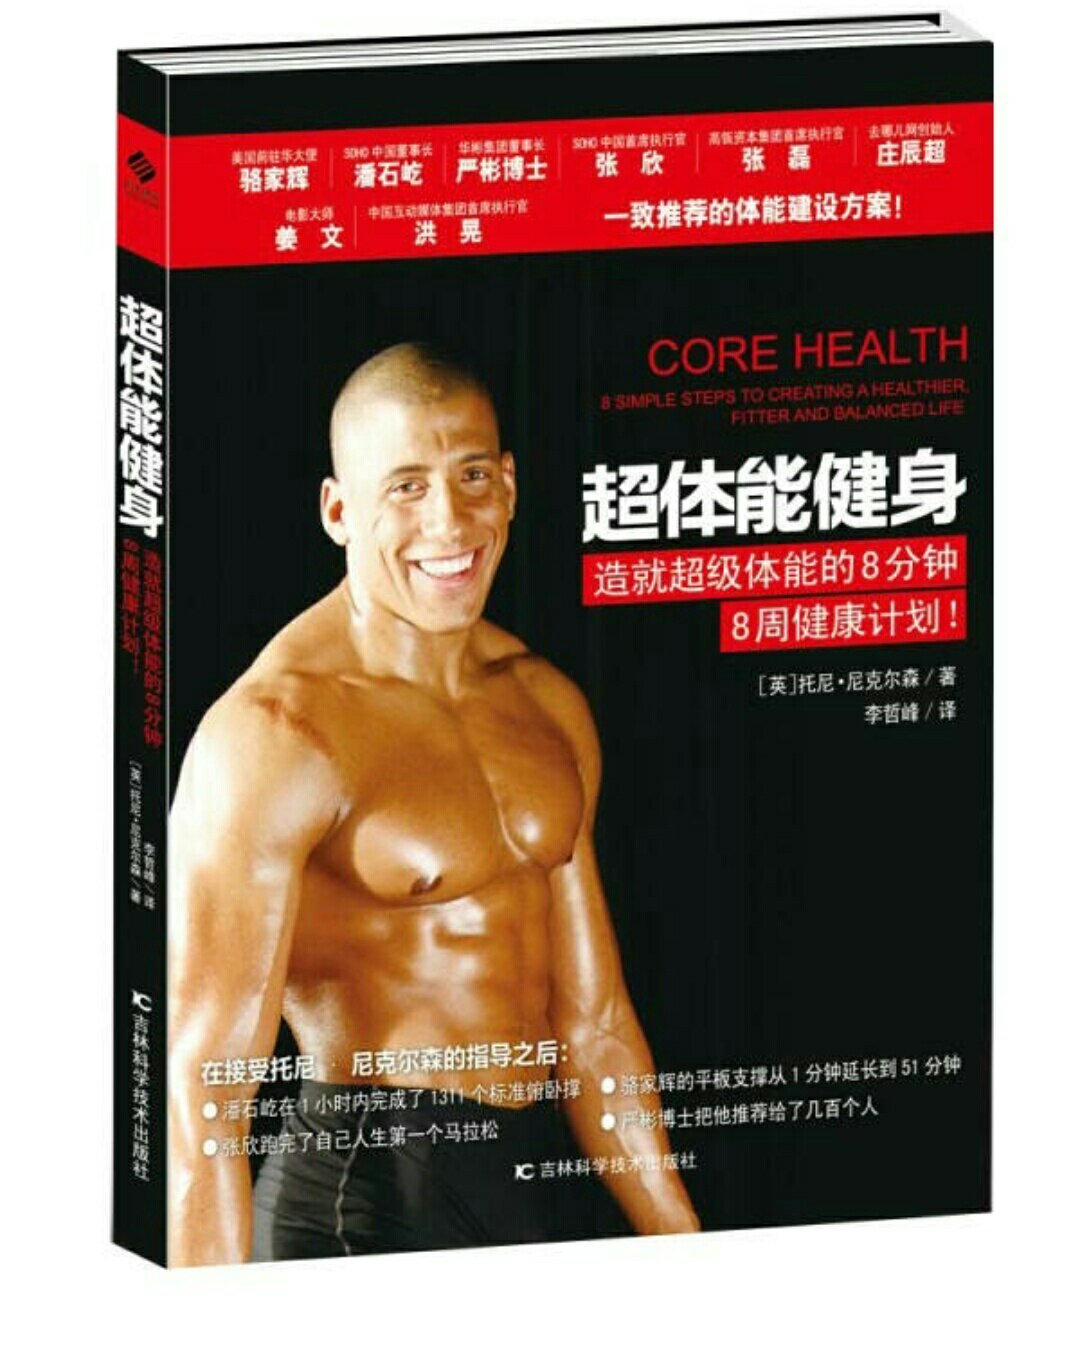 第一次买健身方面书籍。因为关注健康，看过《终身学习》作者为了探寻可复制的健康方法。坚持科学健身。我们对待健康要像对待工作一样。买来参考~